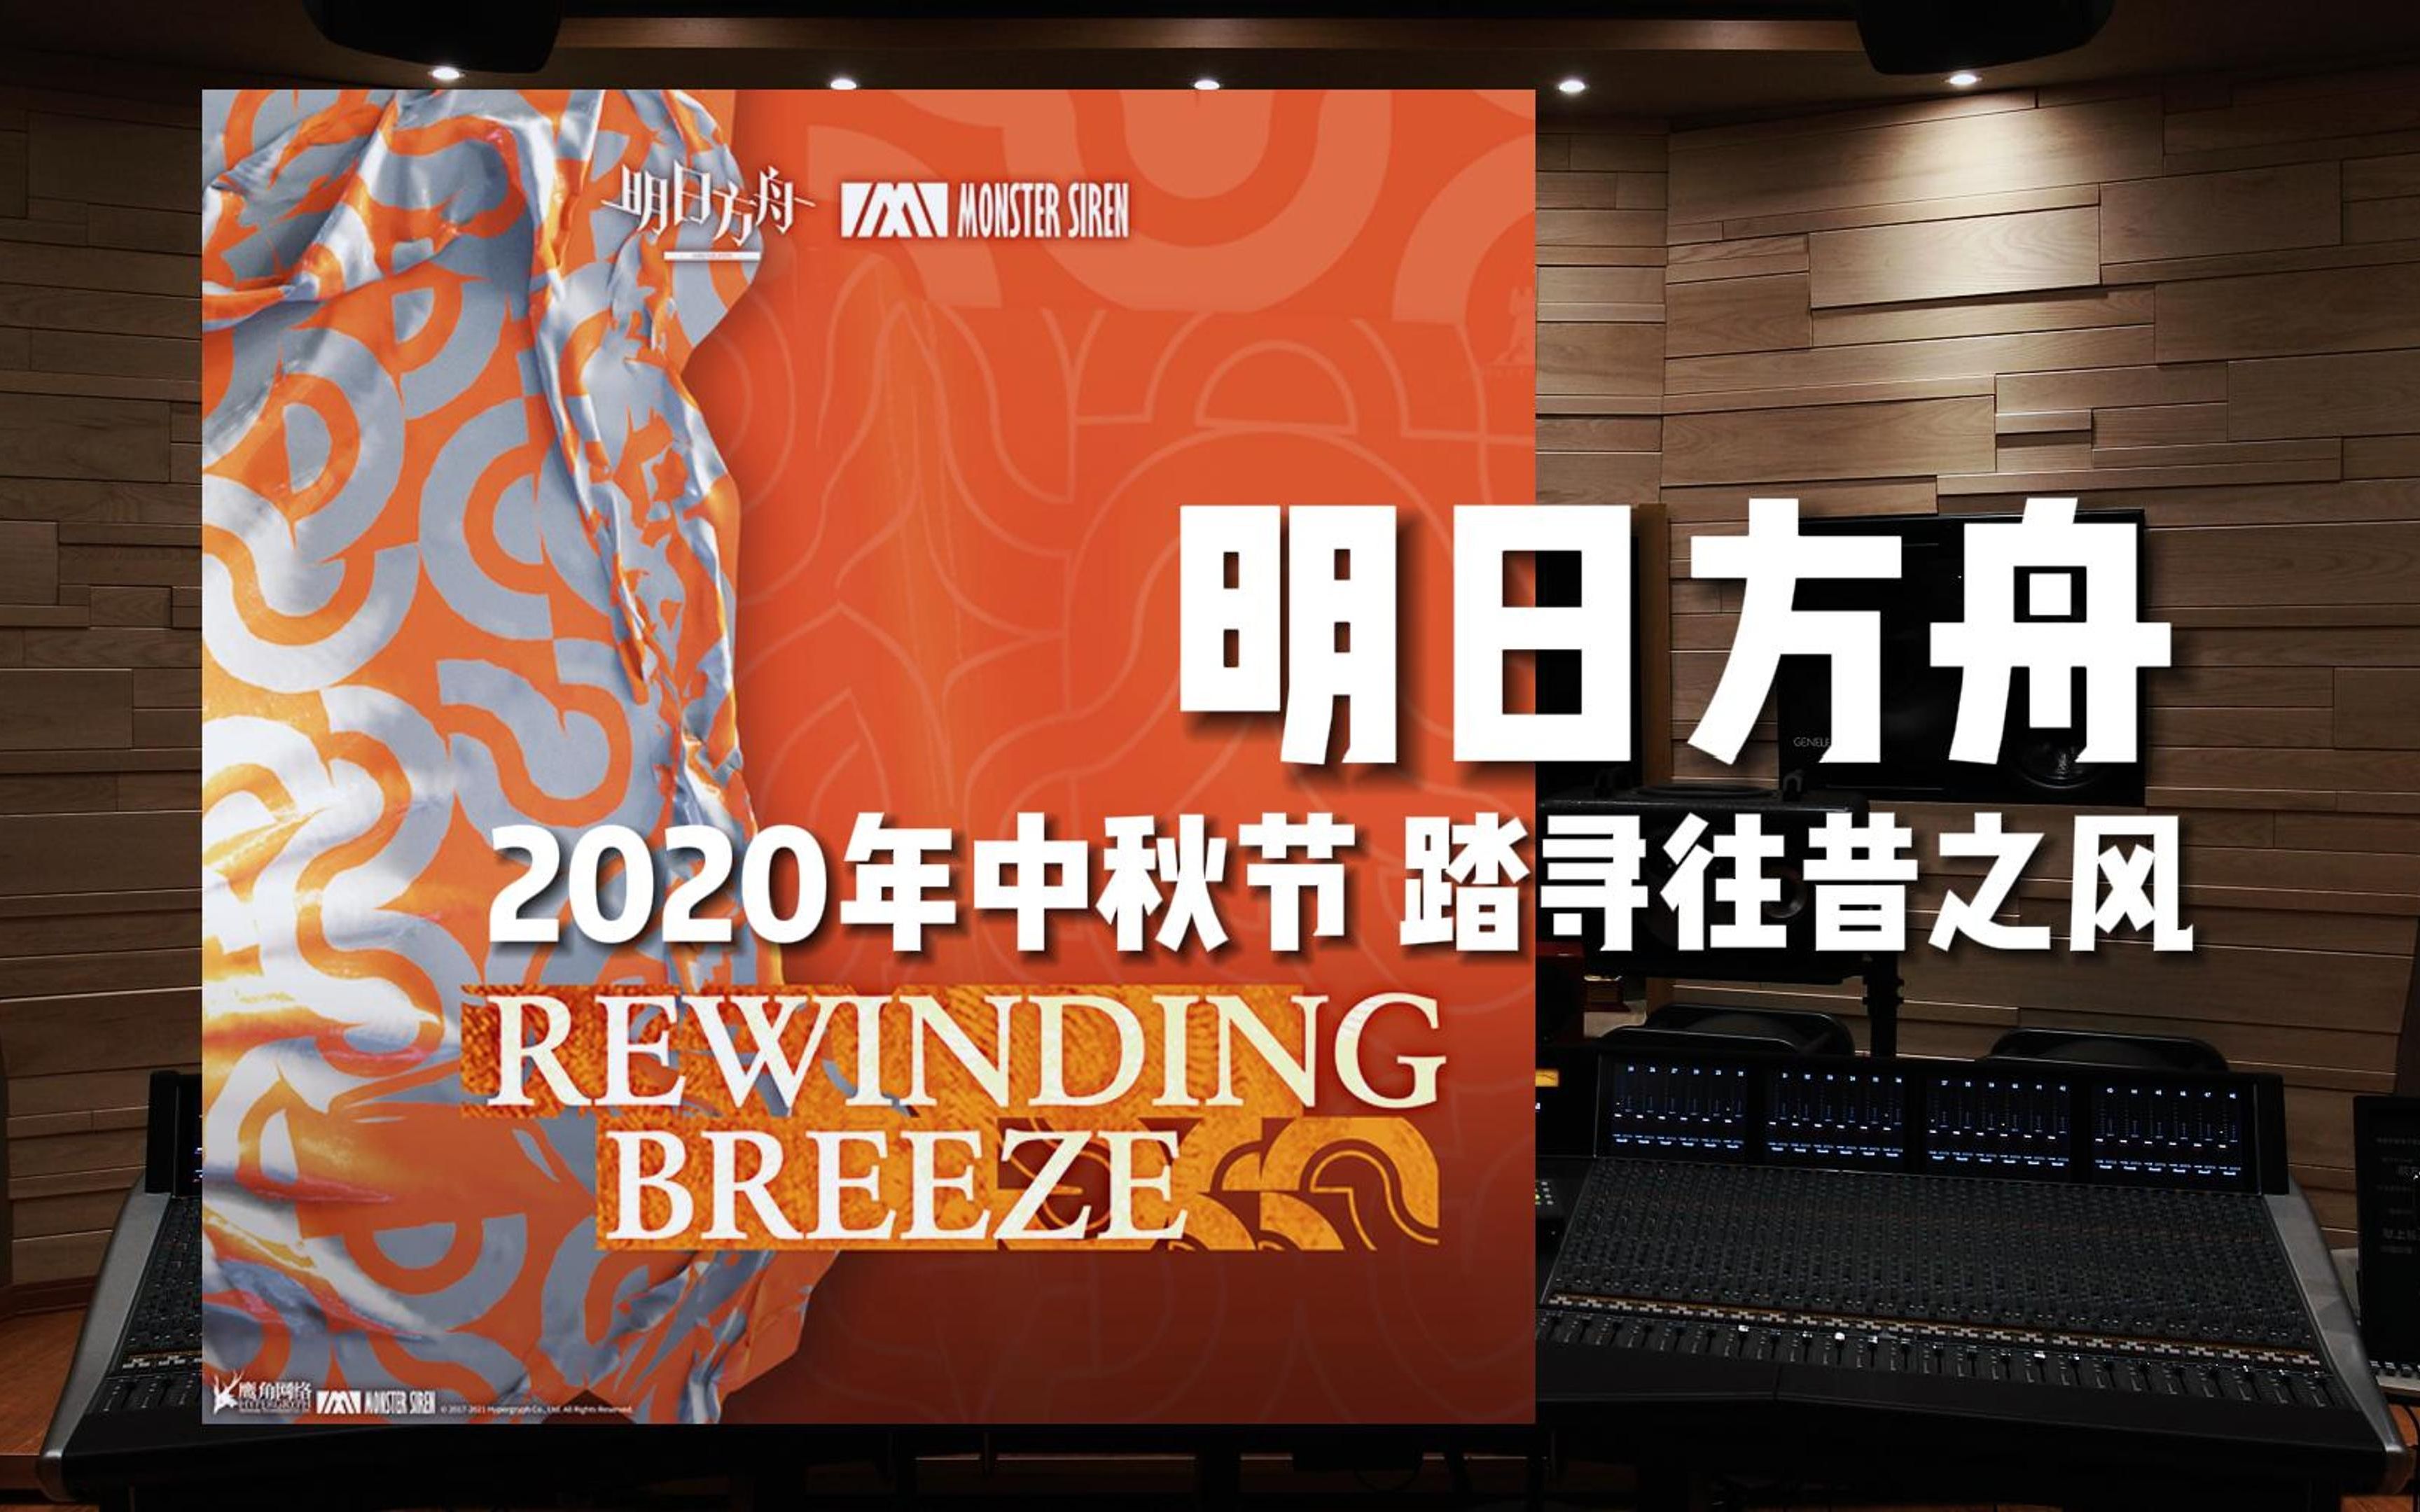 《明日方舟》踏寻往昔之风 Rewinding Breeze——2020年中秋节【Hi-Res百万级录音棚试听】